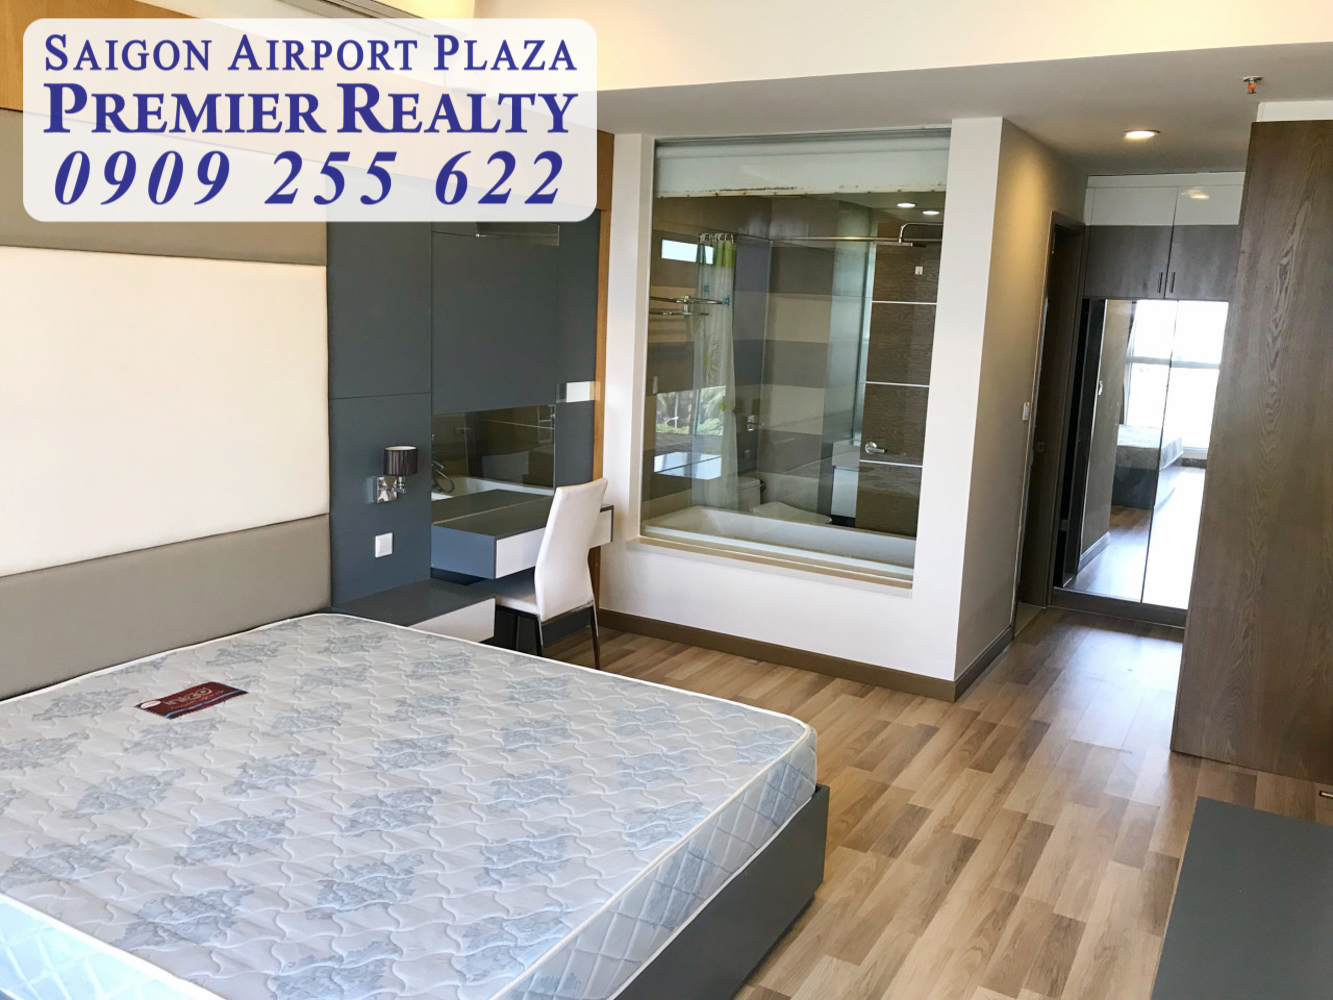 SAIGON AIRPORT PLAZA cho thuê căn hộ chung cư 3PN diện tích 125m2 chỉ 21 triệu full nội thất . Liên hệ hotline PKD: 0909 255 622